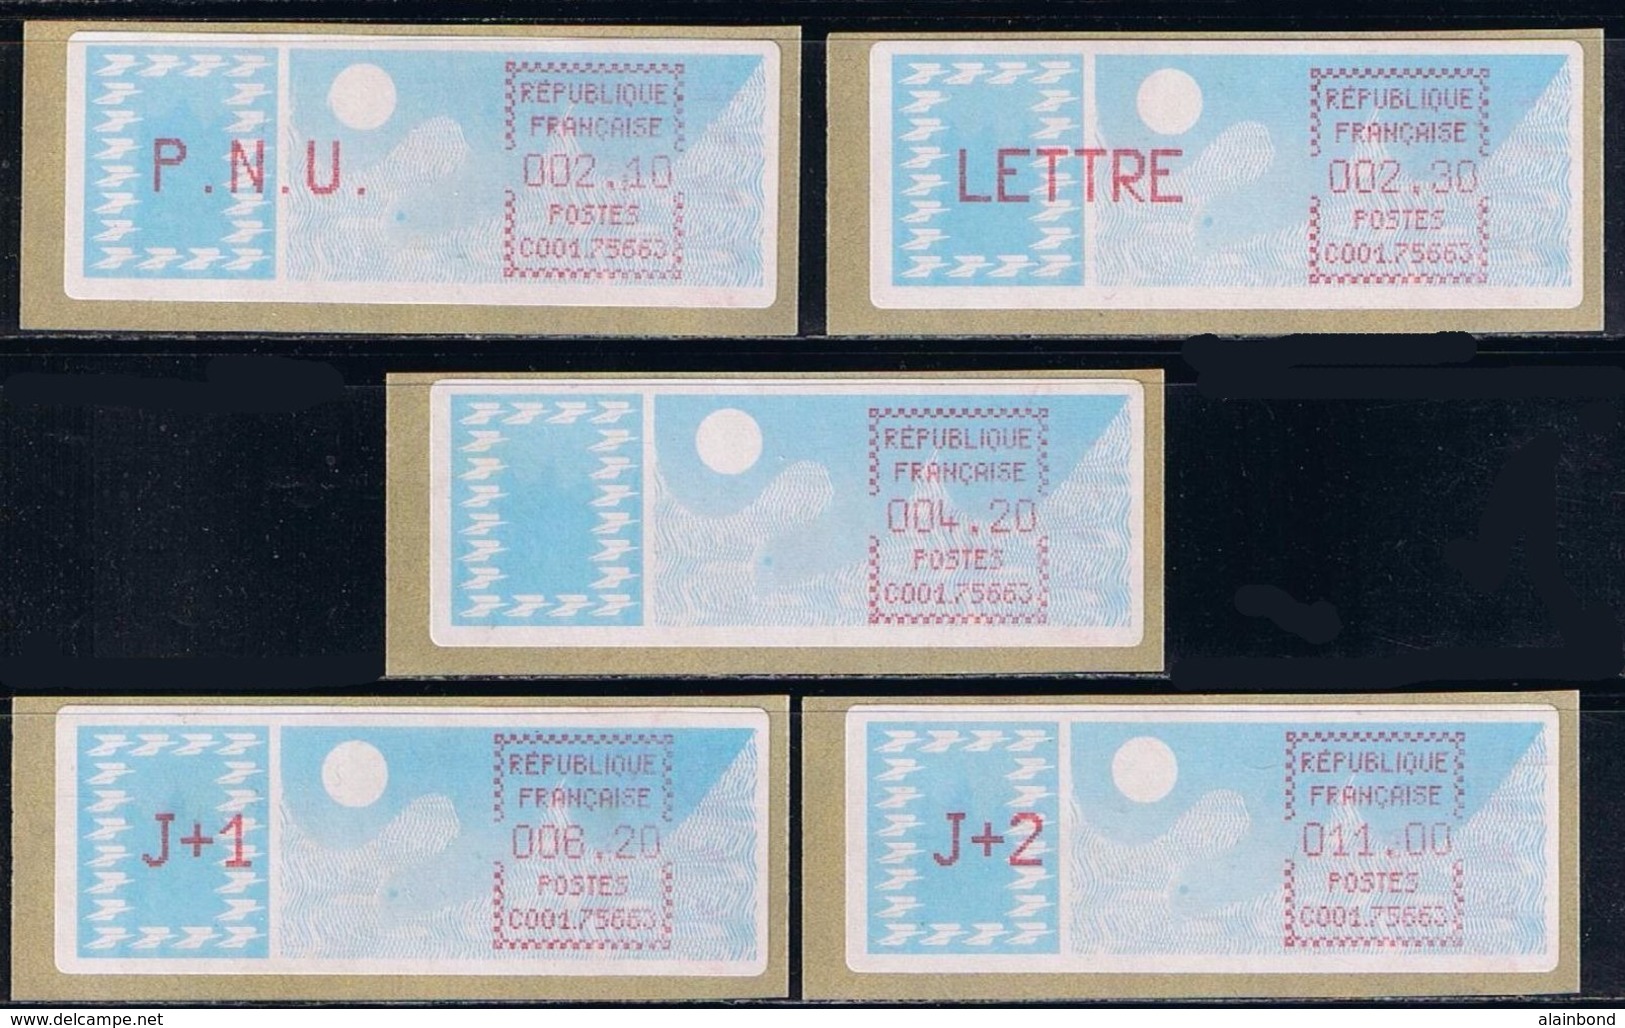 5 ATM Prototype , LSA, CROUZET, CARRIER, PNU 2.10, LETTRE 2.30, 4.20, J+1 6.20, J+2 11.00, PARIS JEANNE D'ARC, C00175663 - 1981-84 Types « LS » & « LSA » (prototypes)